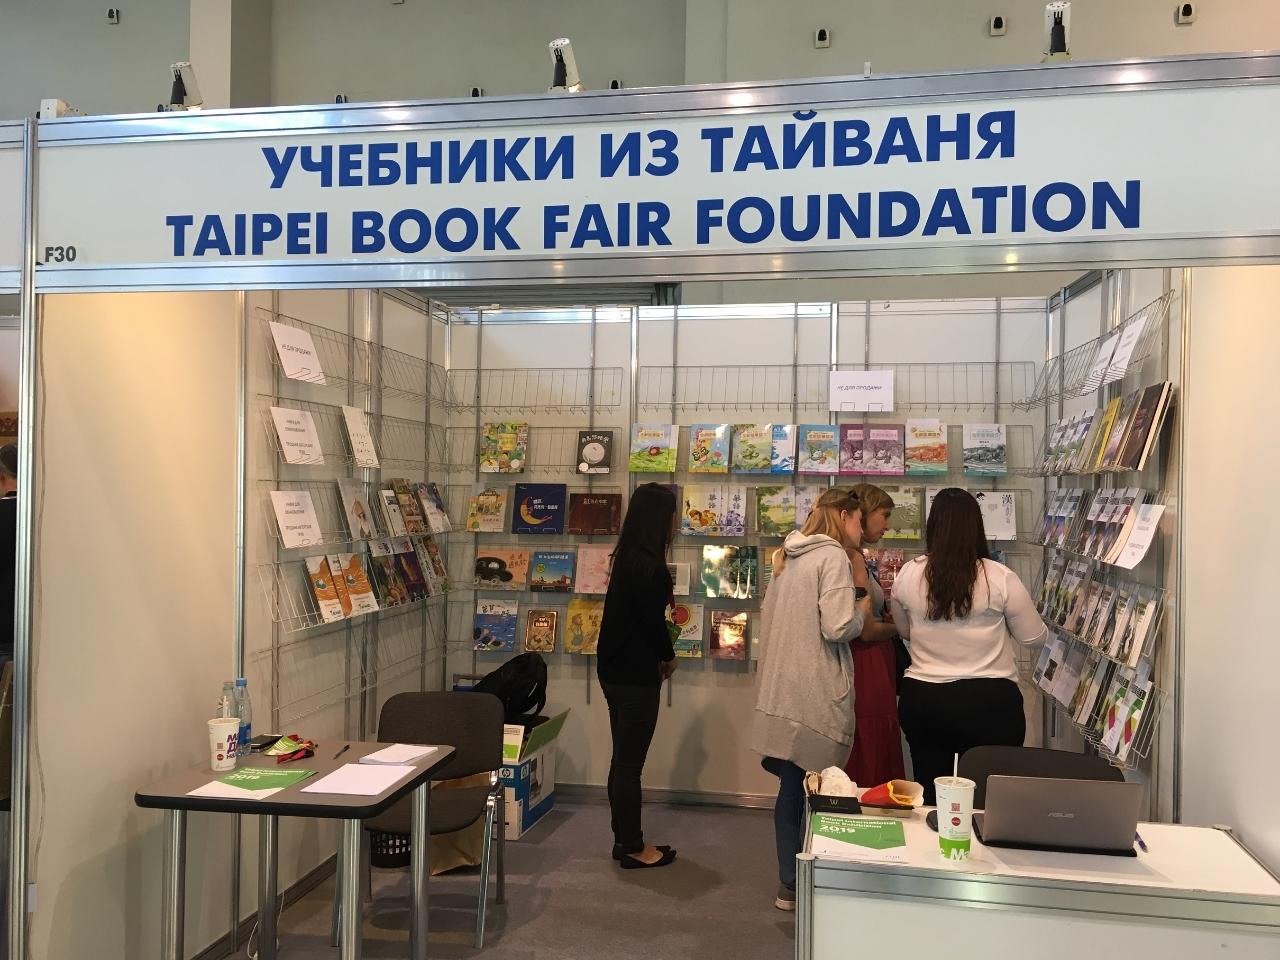 台北書展基金會9月參加第31屆莫斯科國際書展